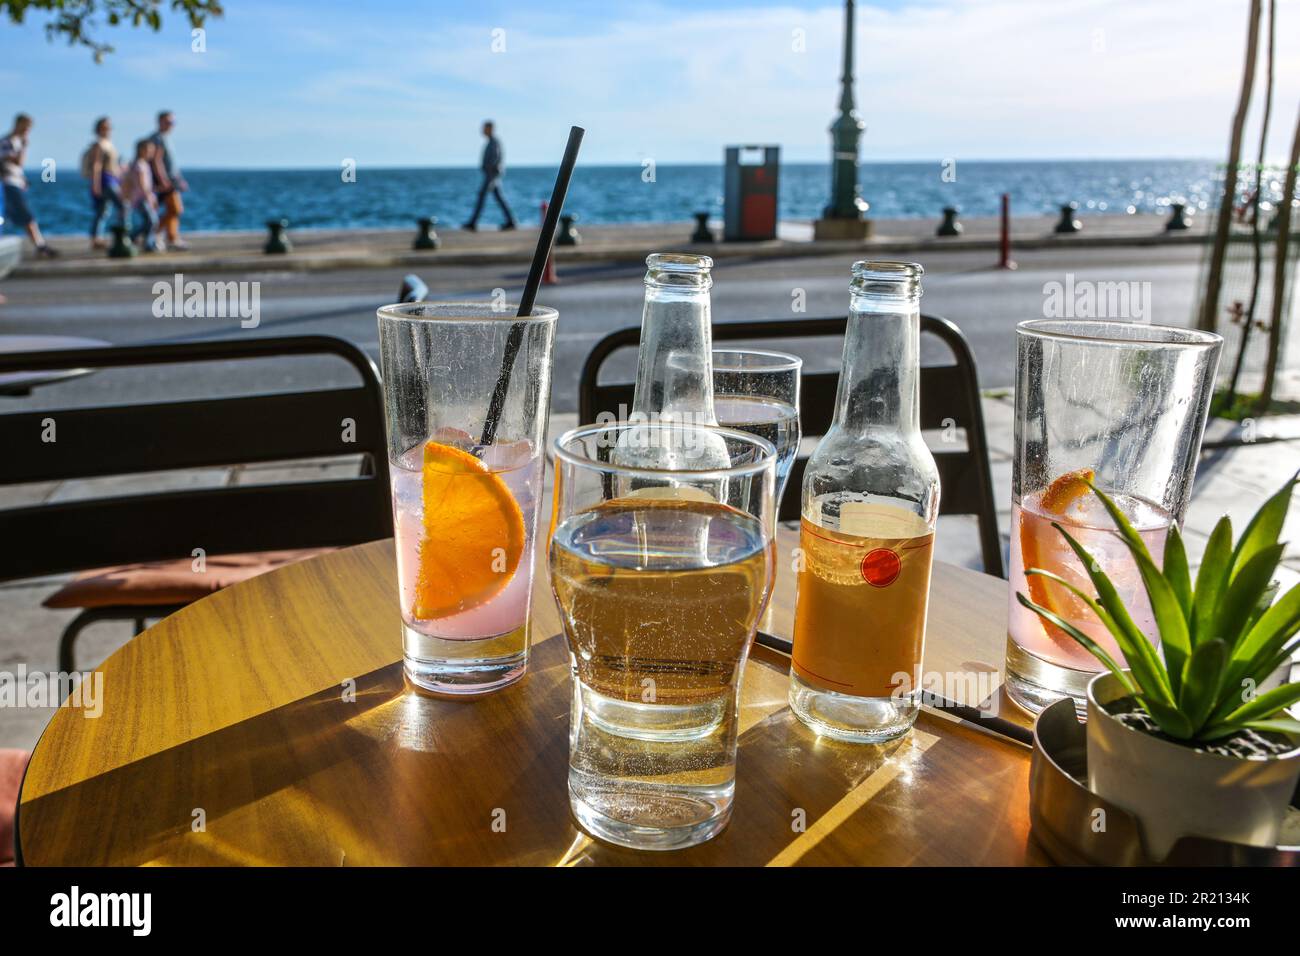 Bevande rinfrescanti in bicchieri da bere e bottiglie su un tavolo in un caffè di strada sul mare, persone blurry a piedi sul lungomare su un s. Foto Stock